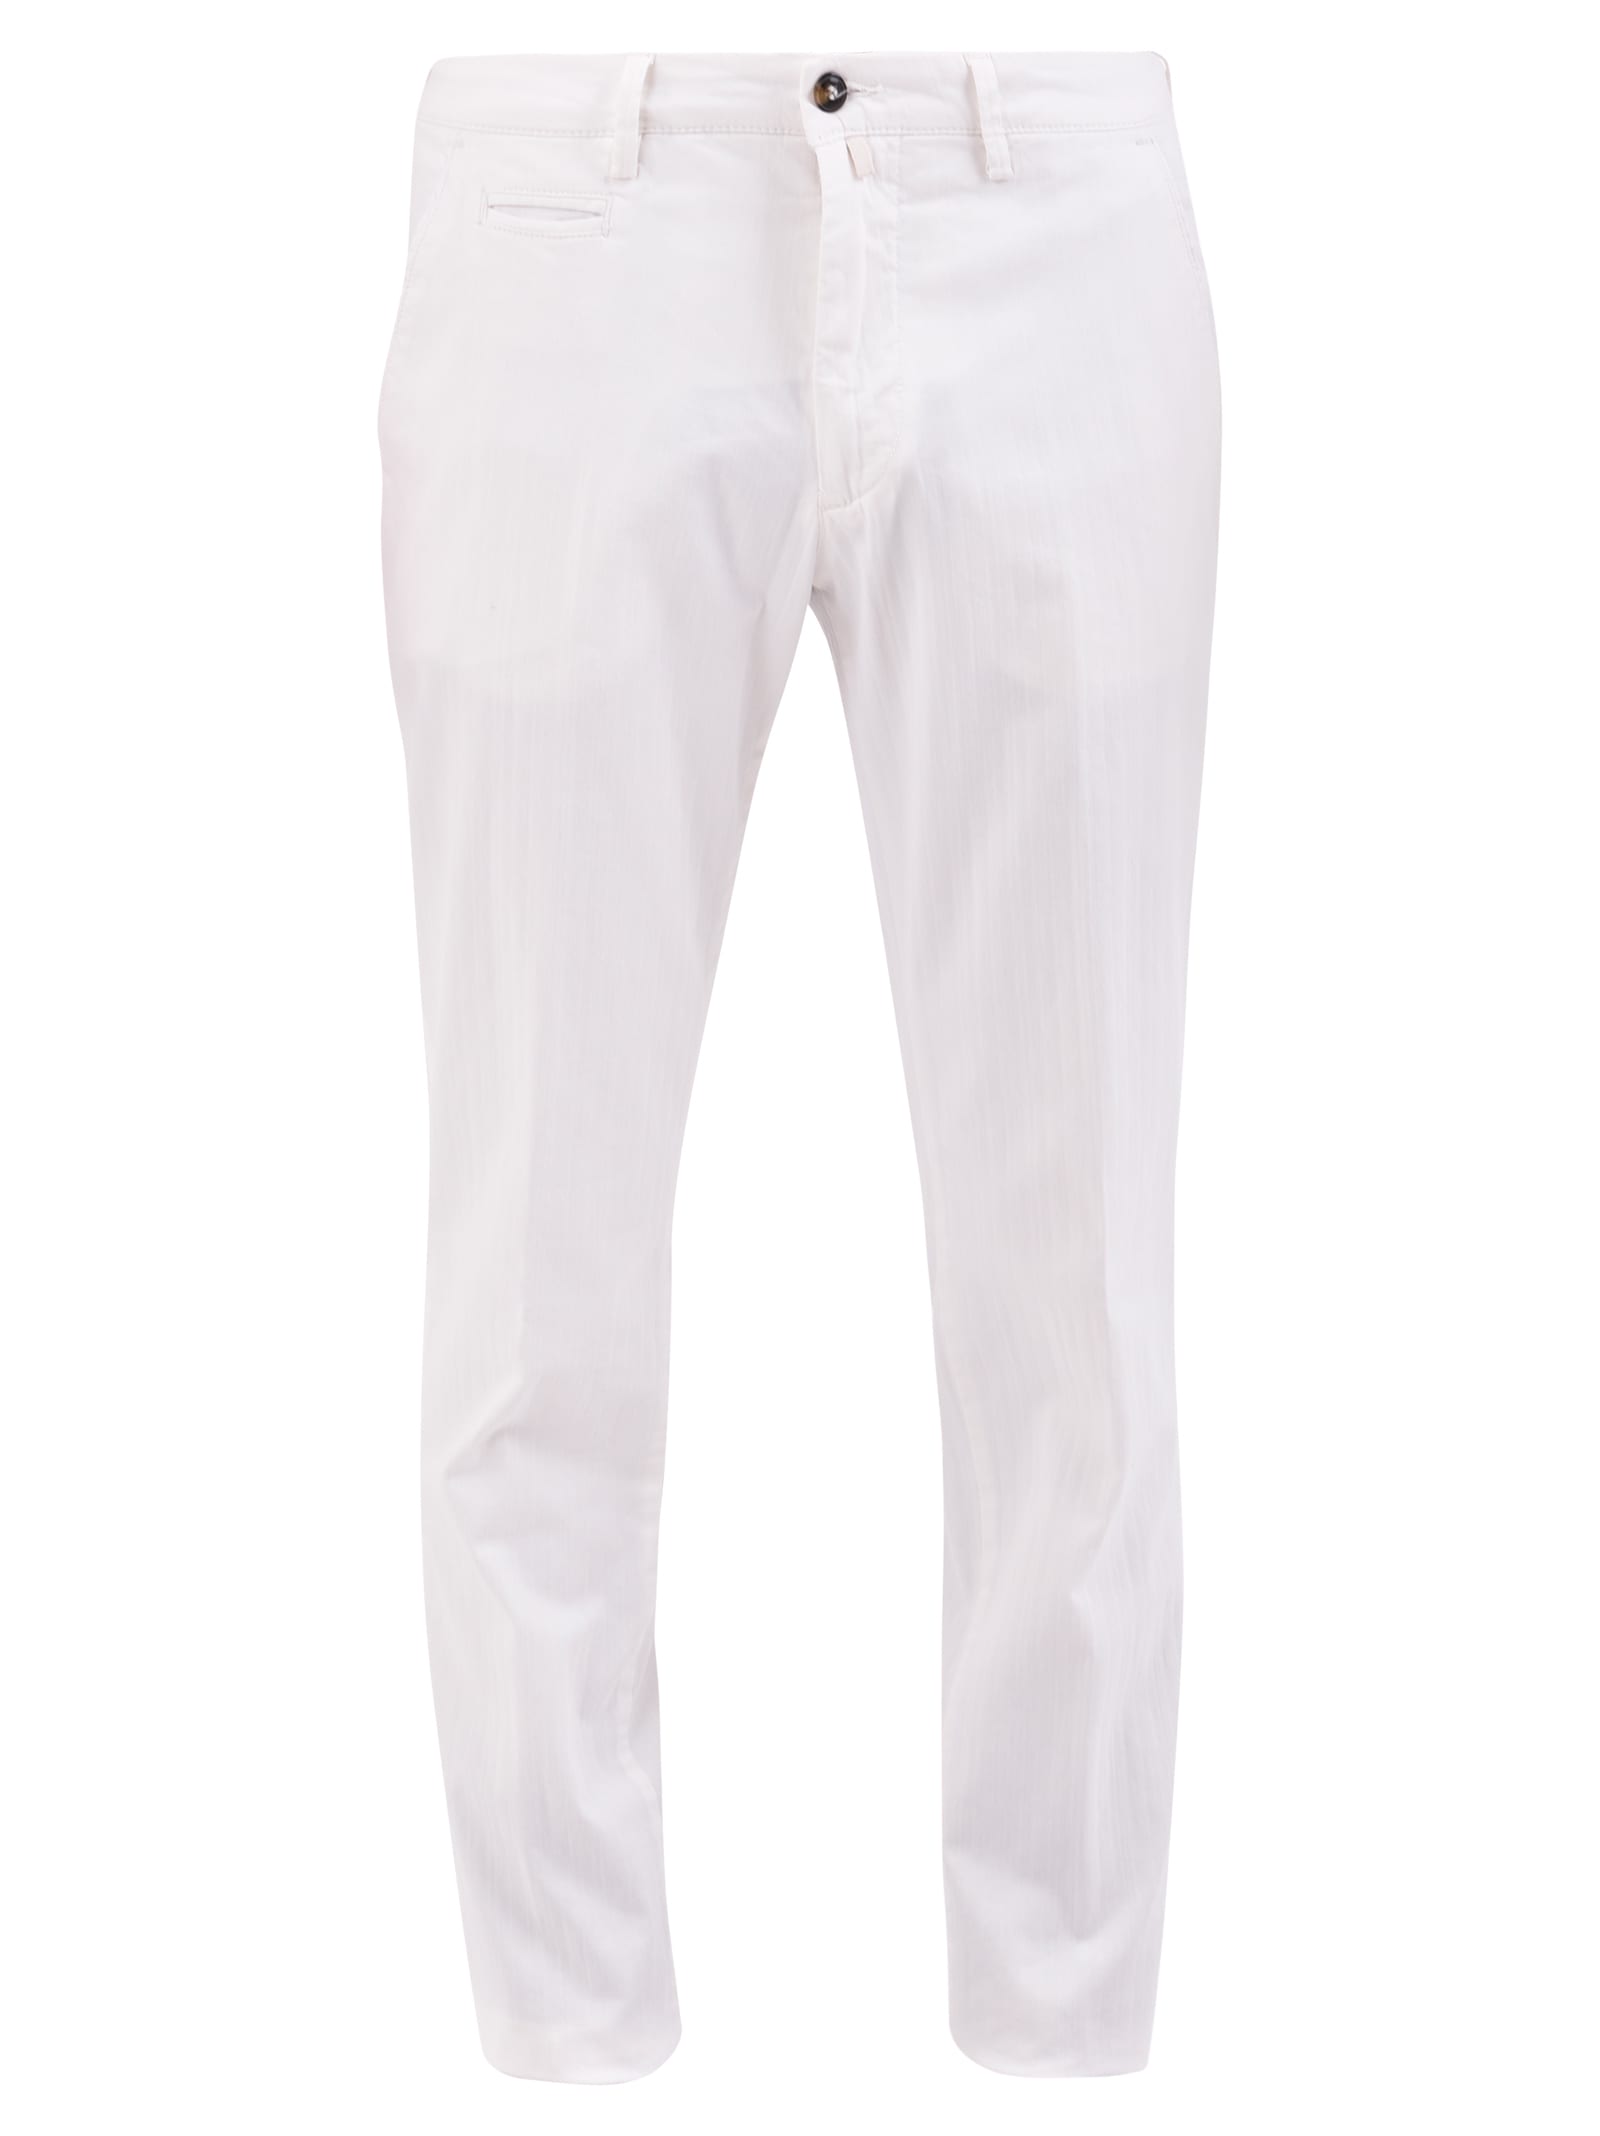 Briglia 1949 White Trousers